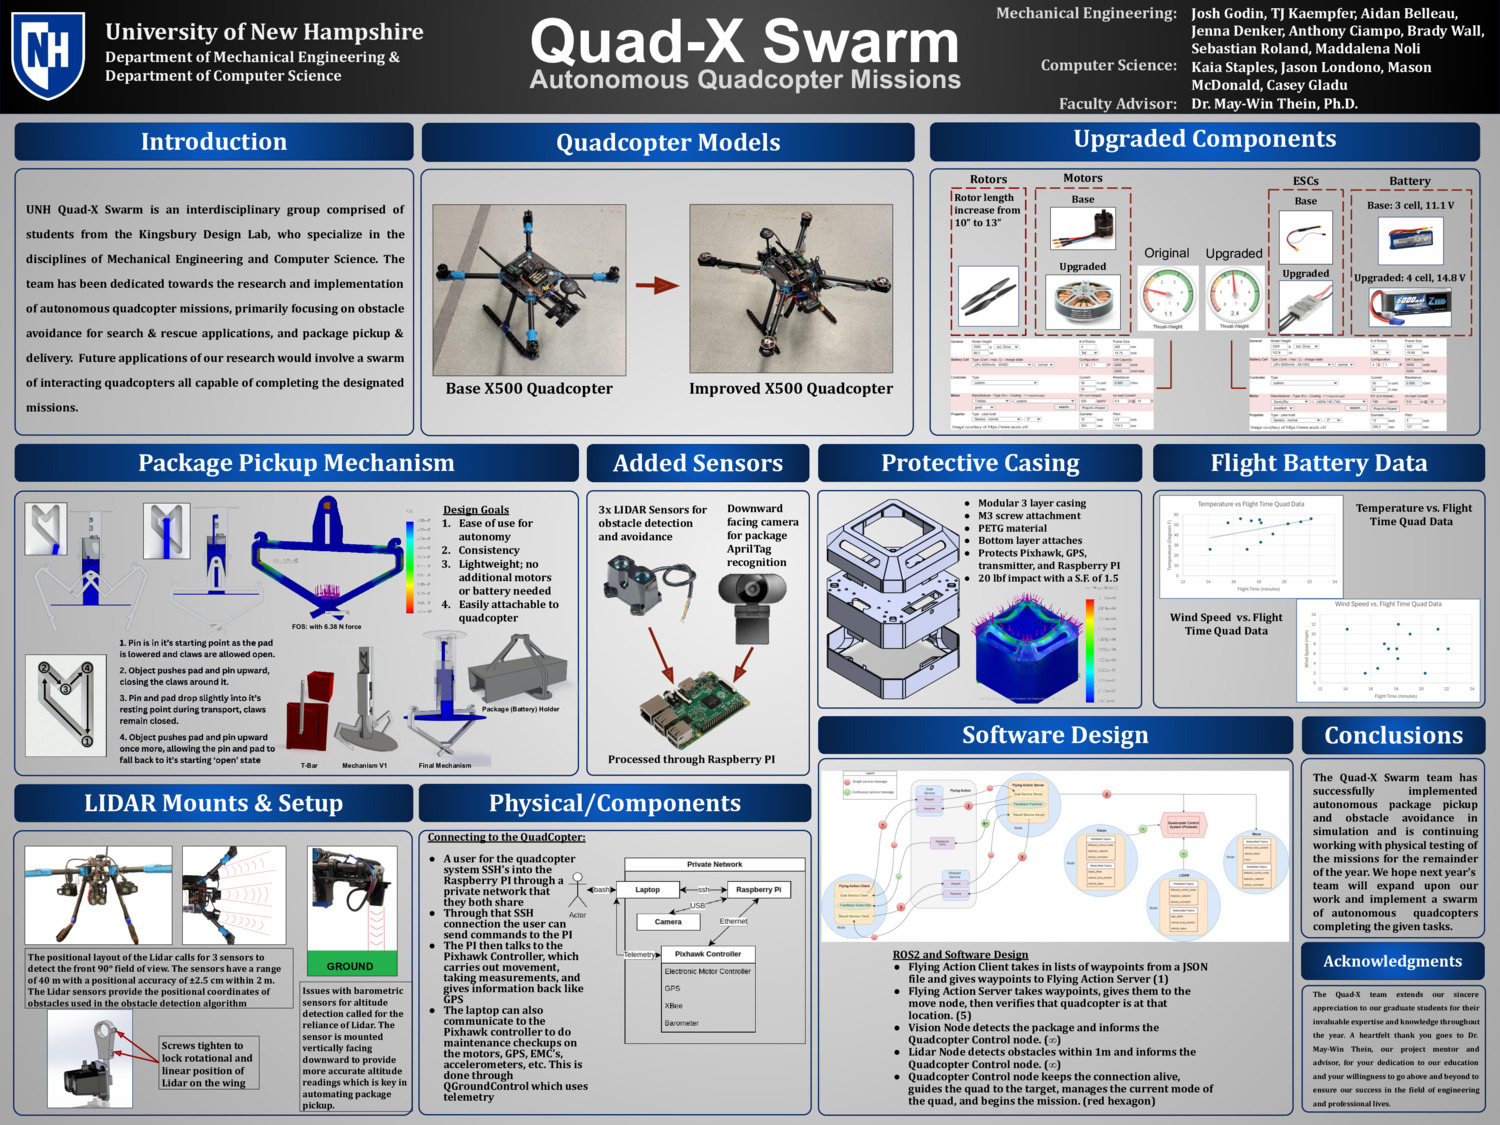 Quad-X Swarm by AidanBelleau